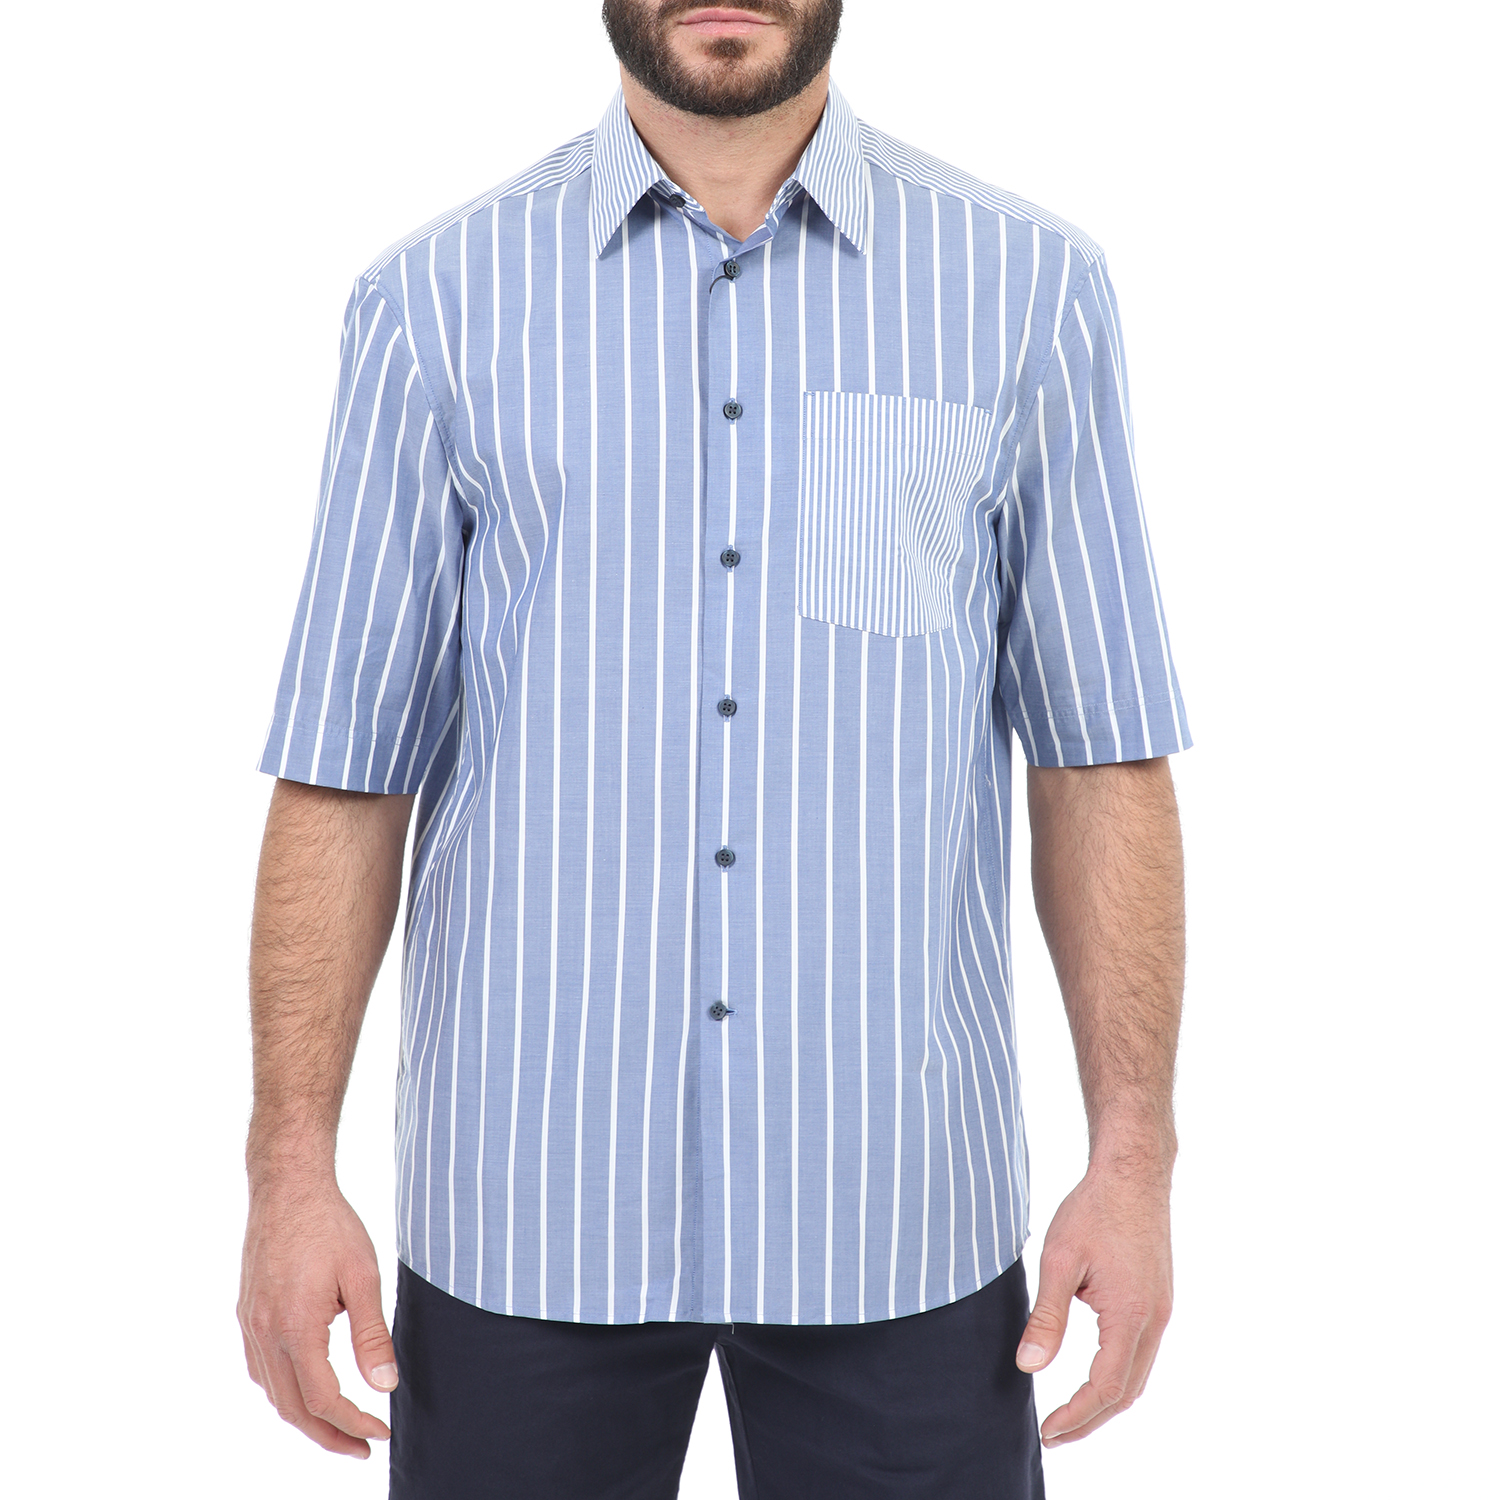 Ανδρικά/Ρούχα/Πουκάμισα/Κοντομάνικα-Αμάνικα CK - Ανδρικό κοντομάνικο πουκάμισο CK GARON_3/4 BOLD STRIPE μπλε